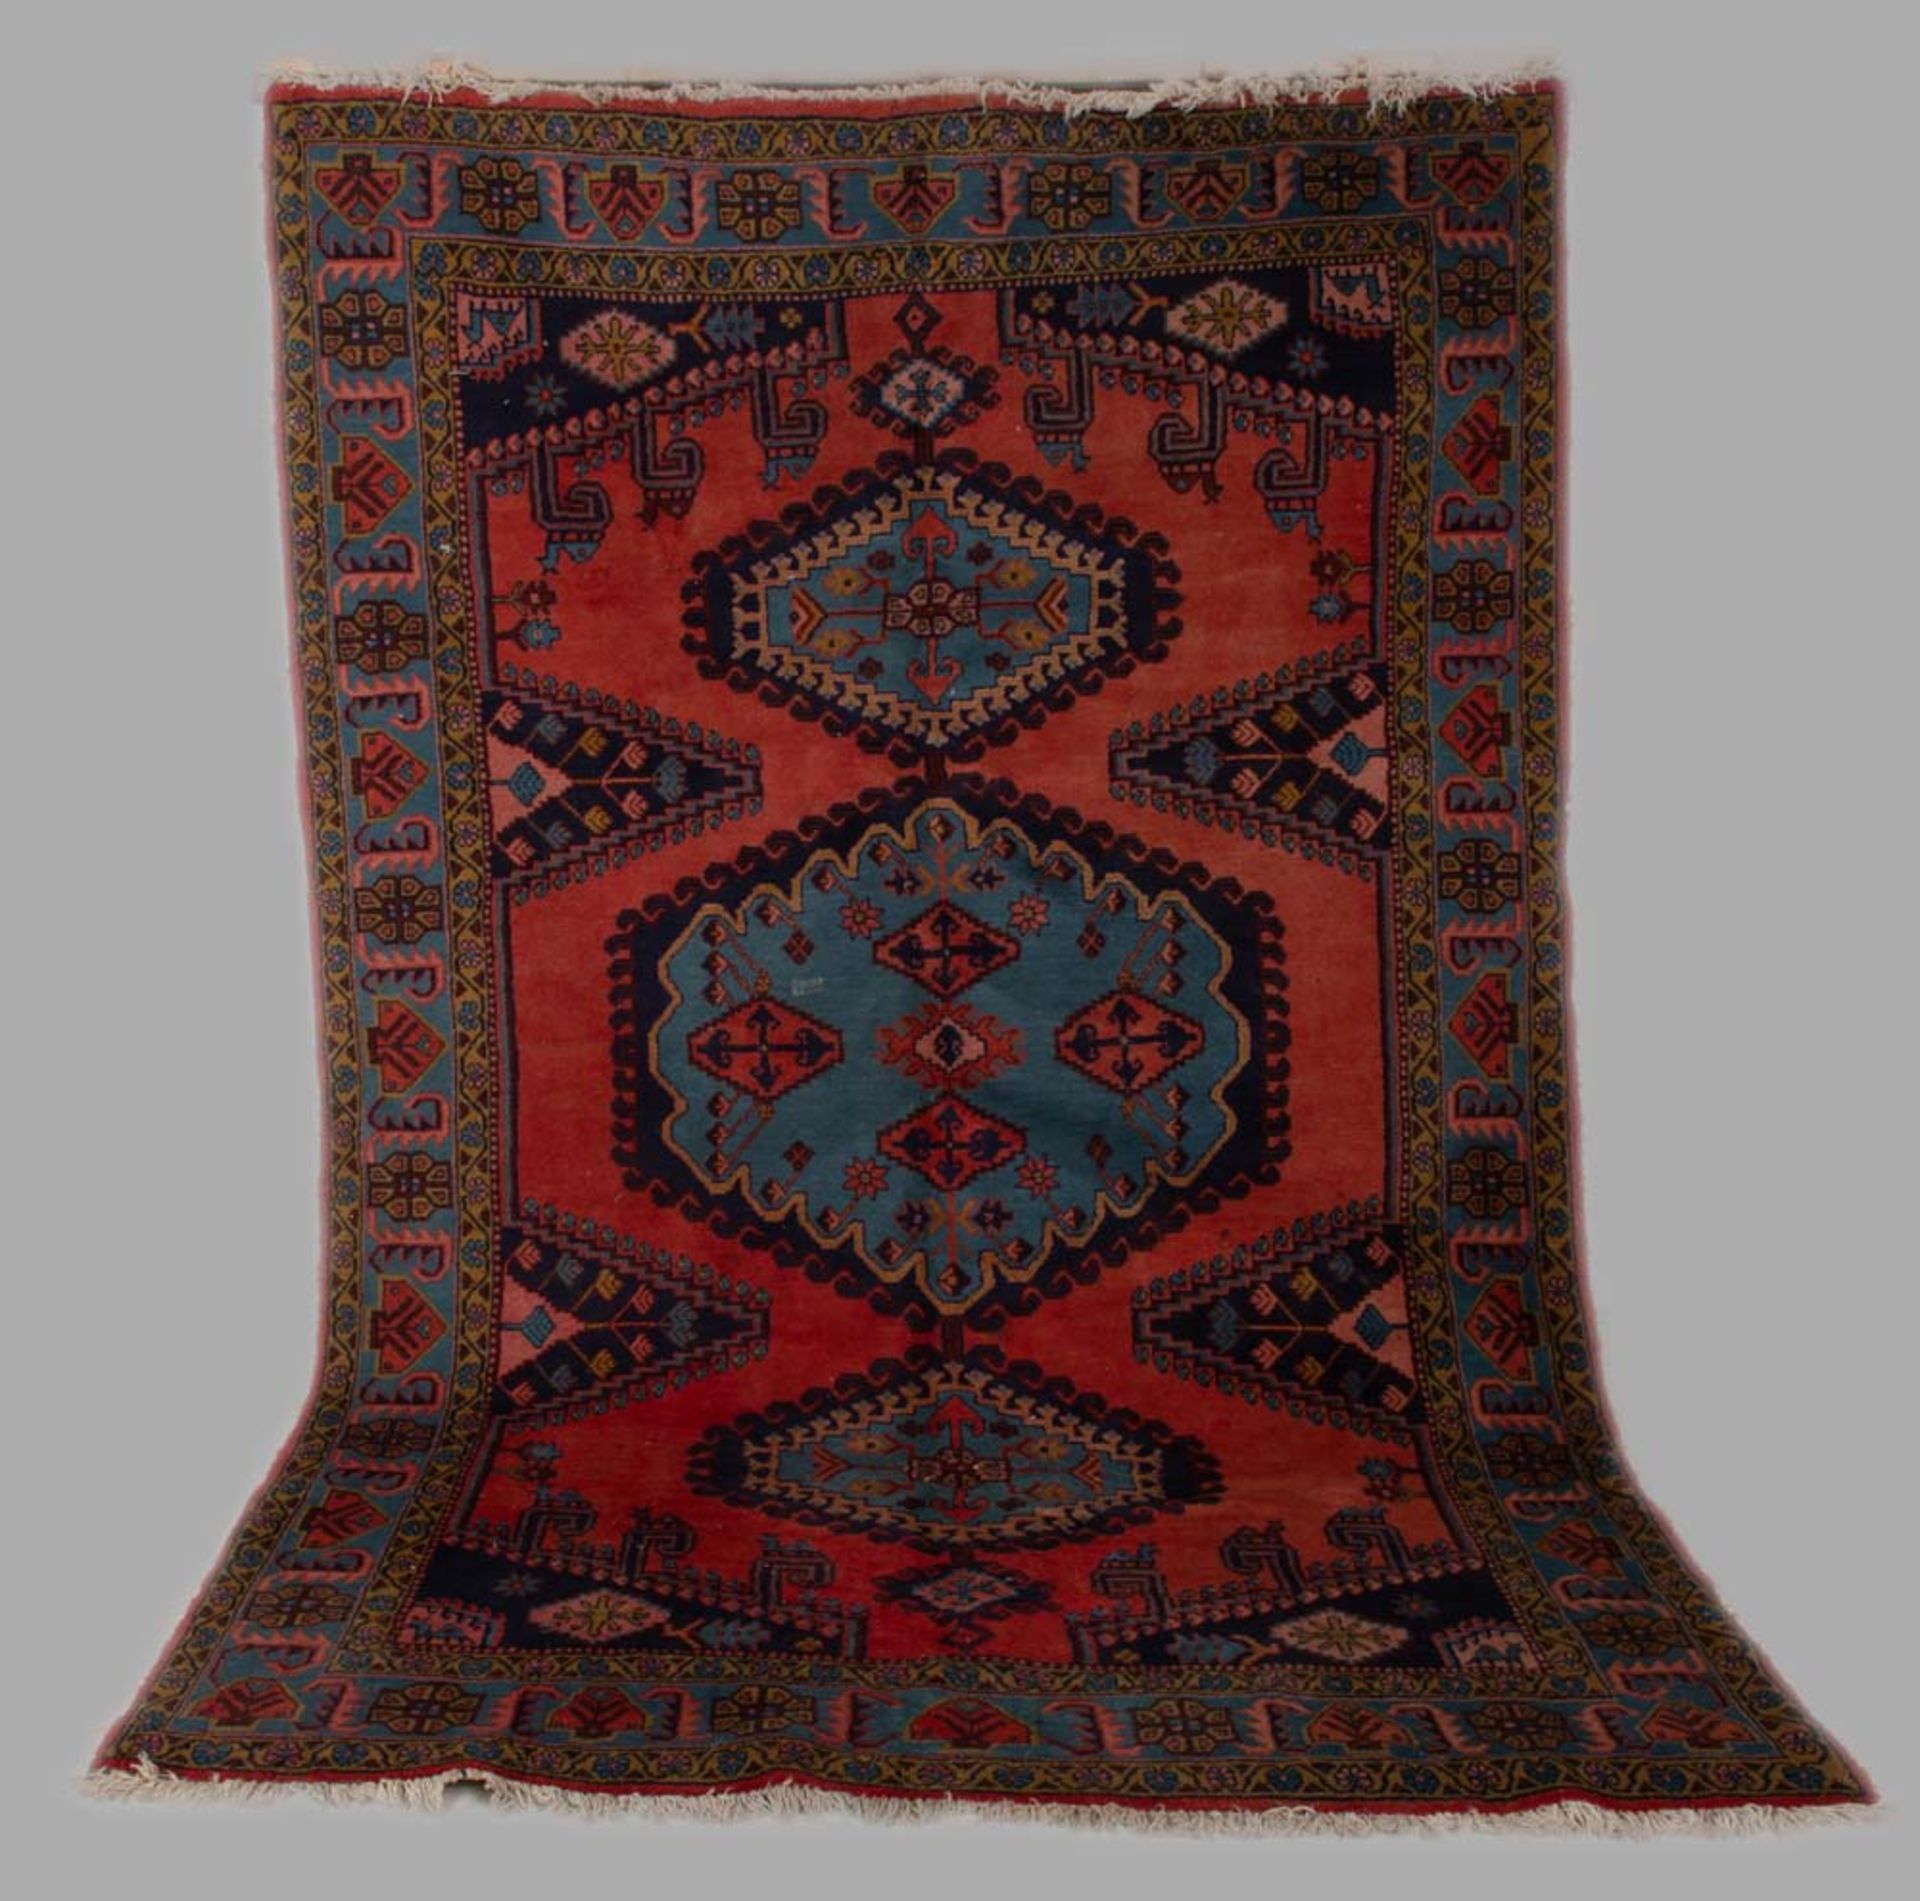 Kaukasischer Teppich, 298 x 200 cm.